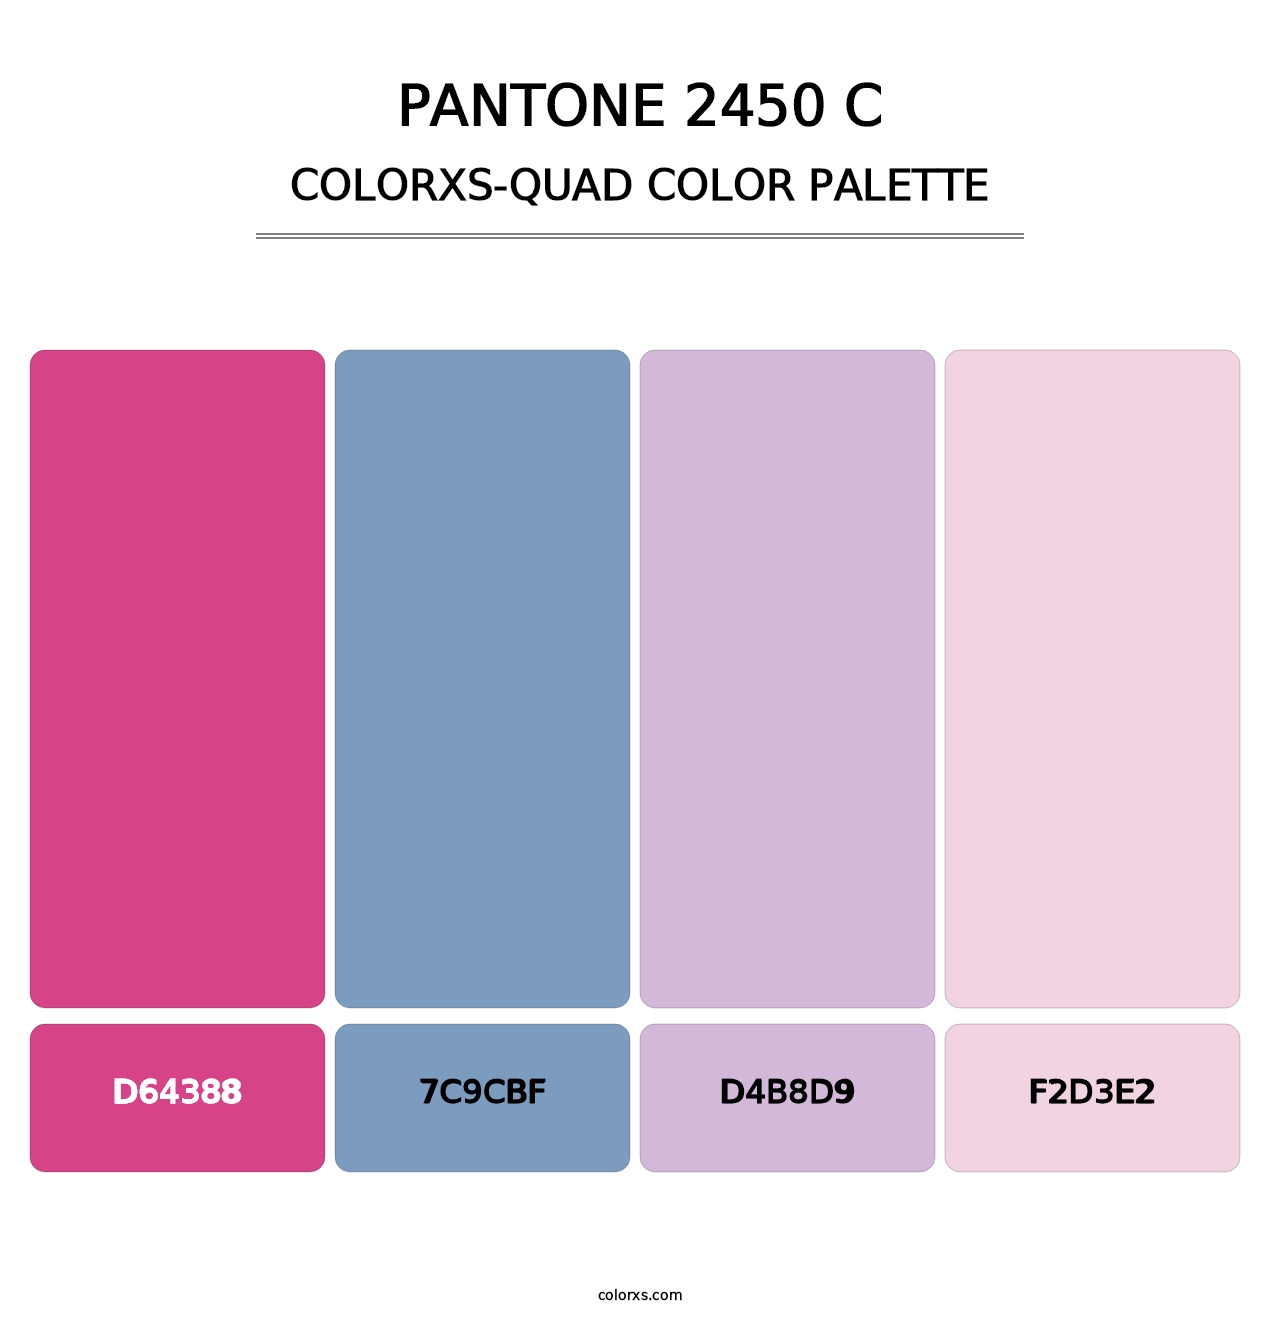 PANTONE 2450 C - Colorxs Quad Palette